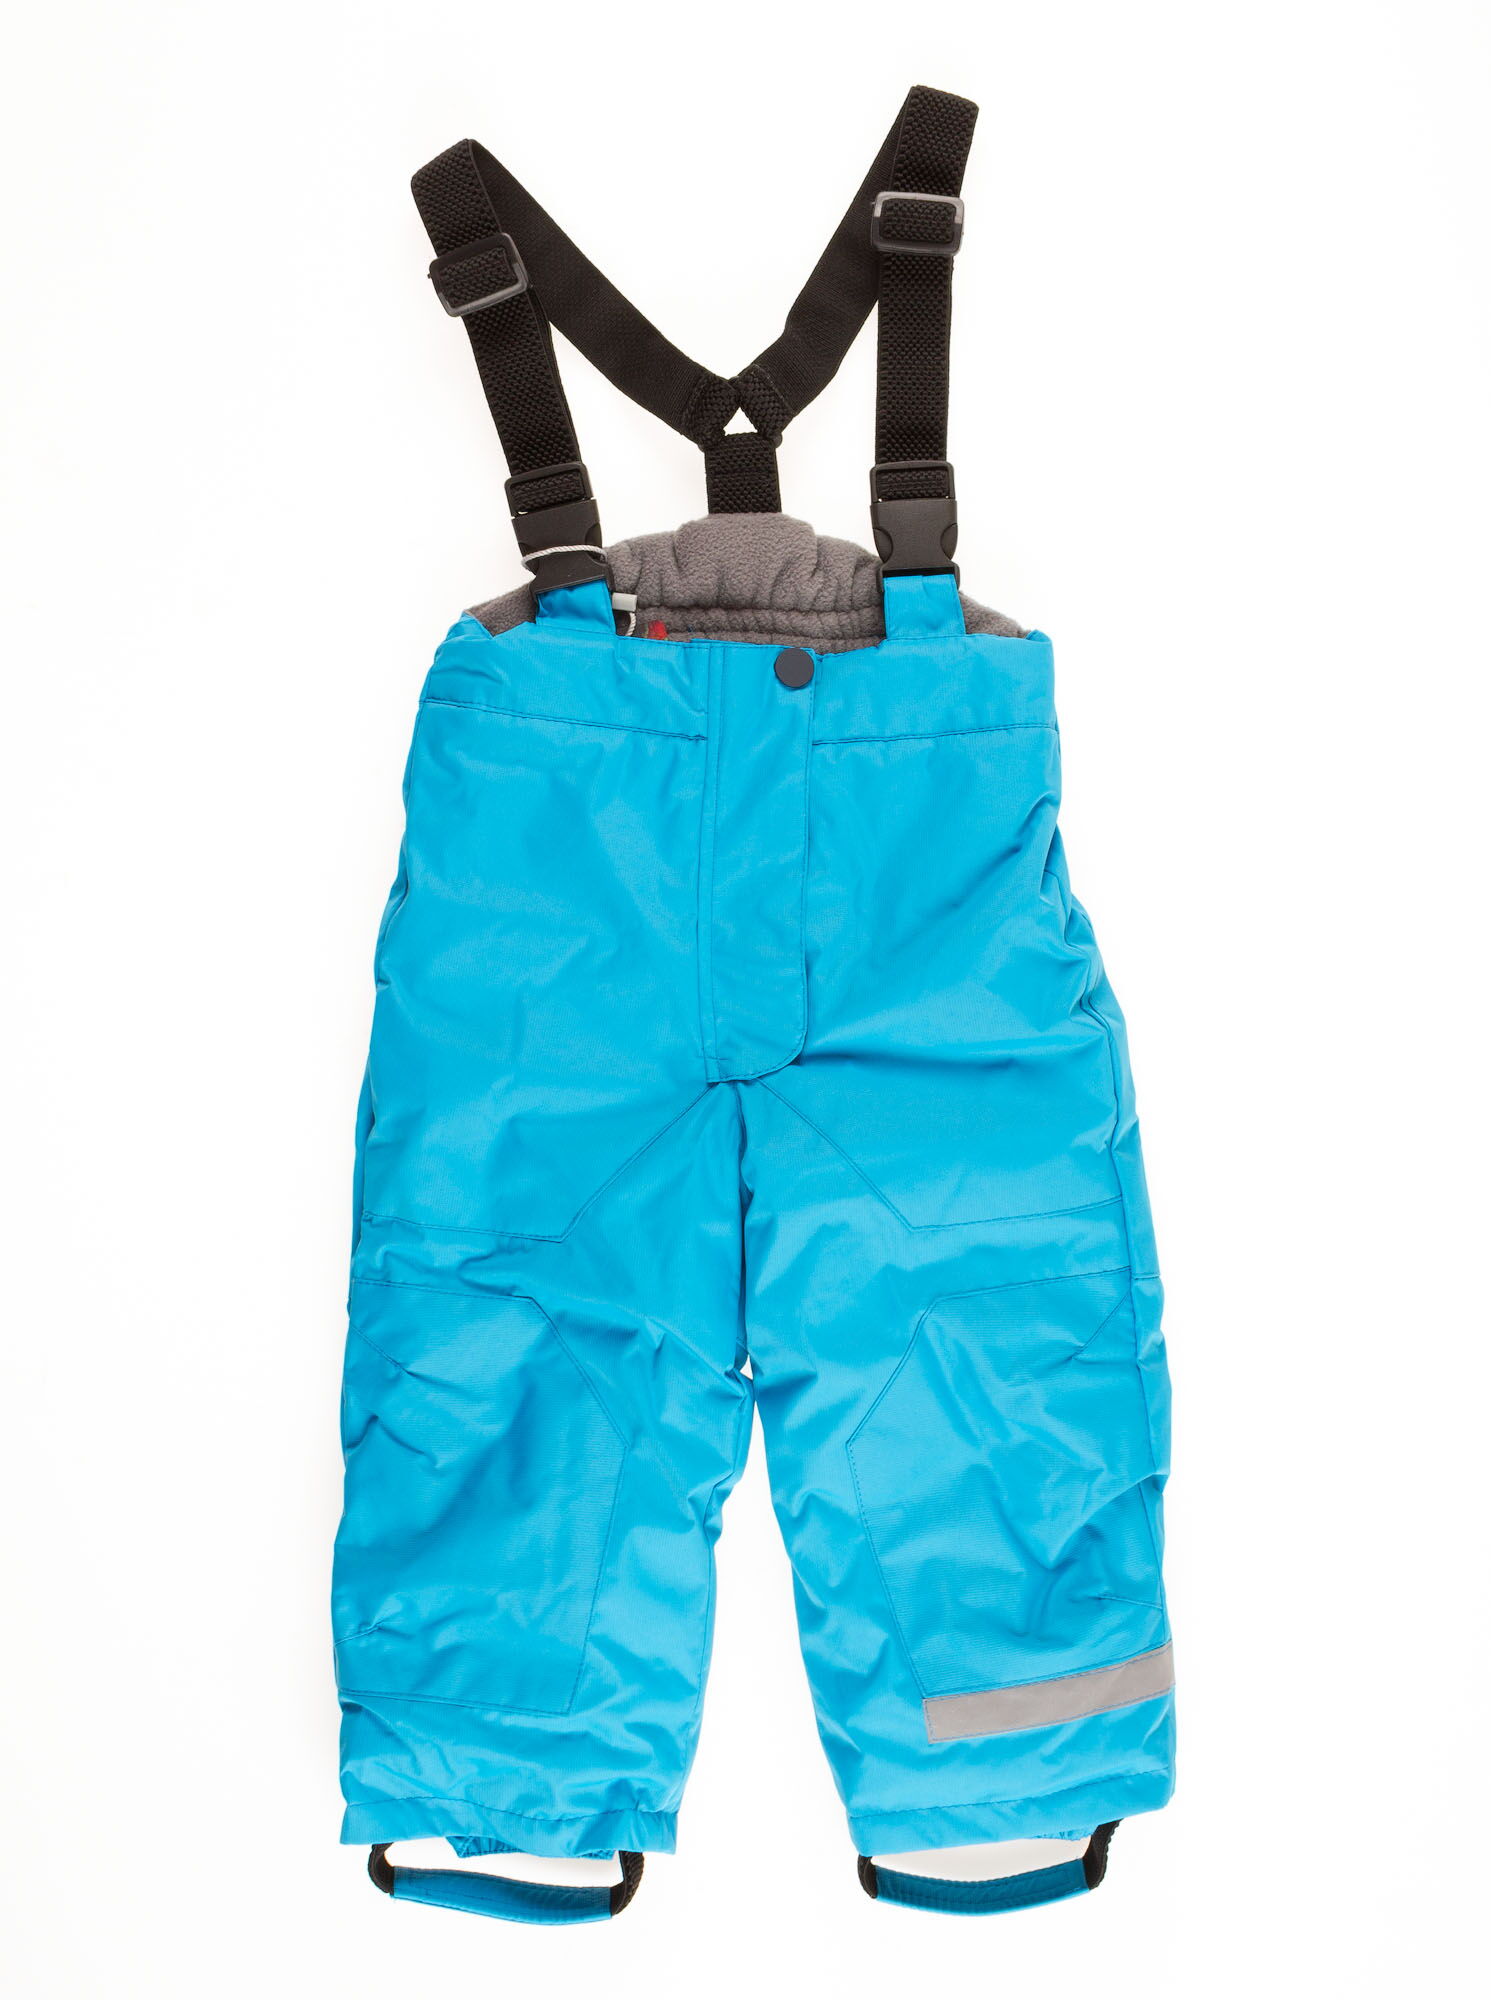 Комбинезон зимний раздельный для мальчика (куртка+штаны) DCkids голубой Скай - фотография